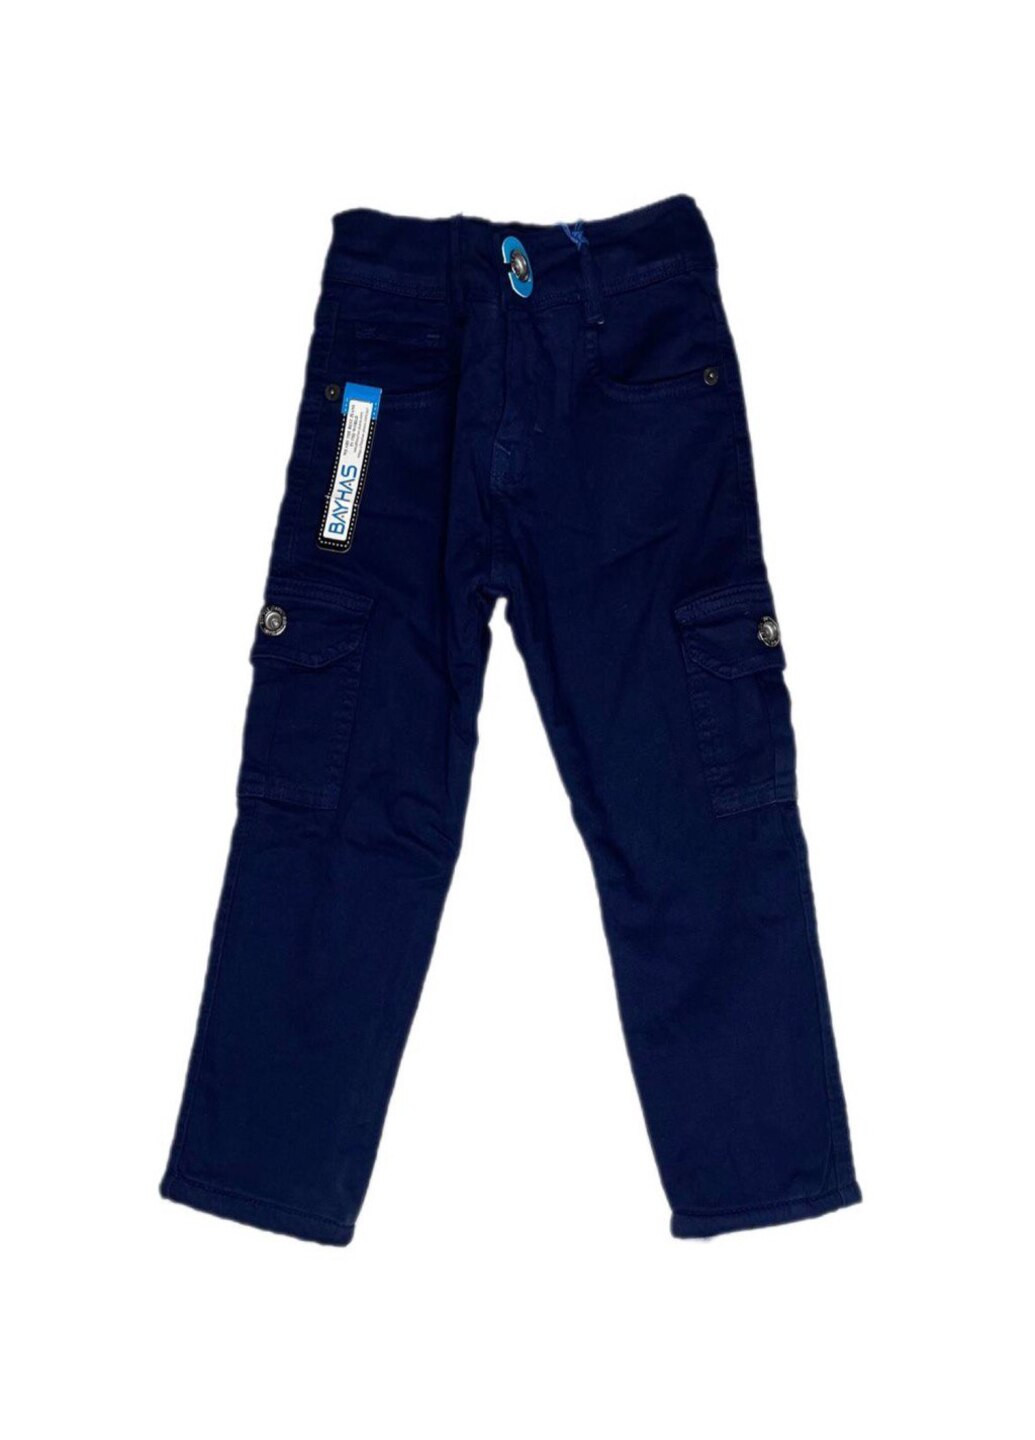 Синие зимние джинсы теплые для мальчика Модняшки